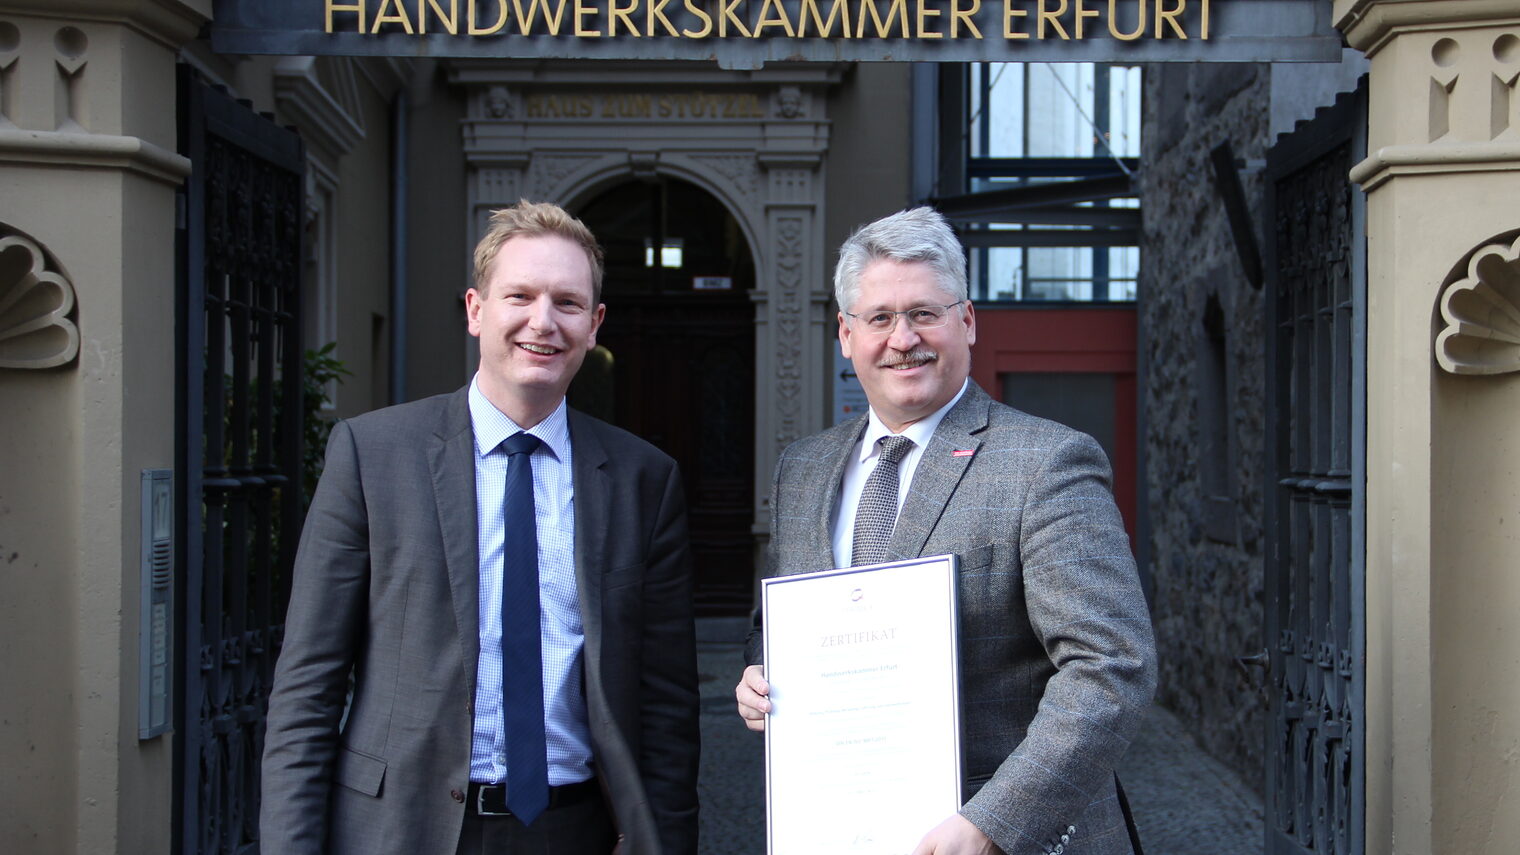 Hauptgeschäftsführer Thomas Malcherek (re.) und der QM-Beauftragte der Handwerkskammer Erfurt, Tobias Hinz, nahmen die Zertifizierungsurkunde entgegen.